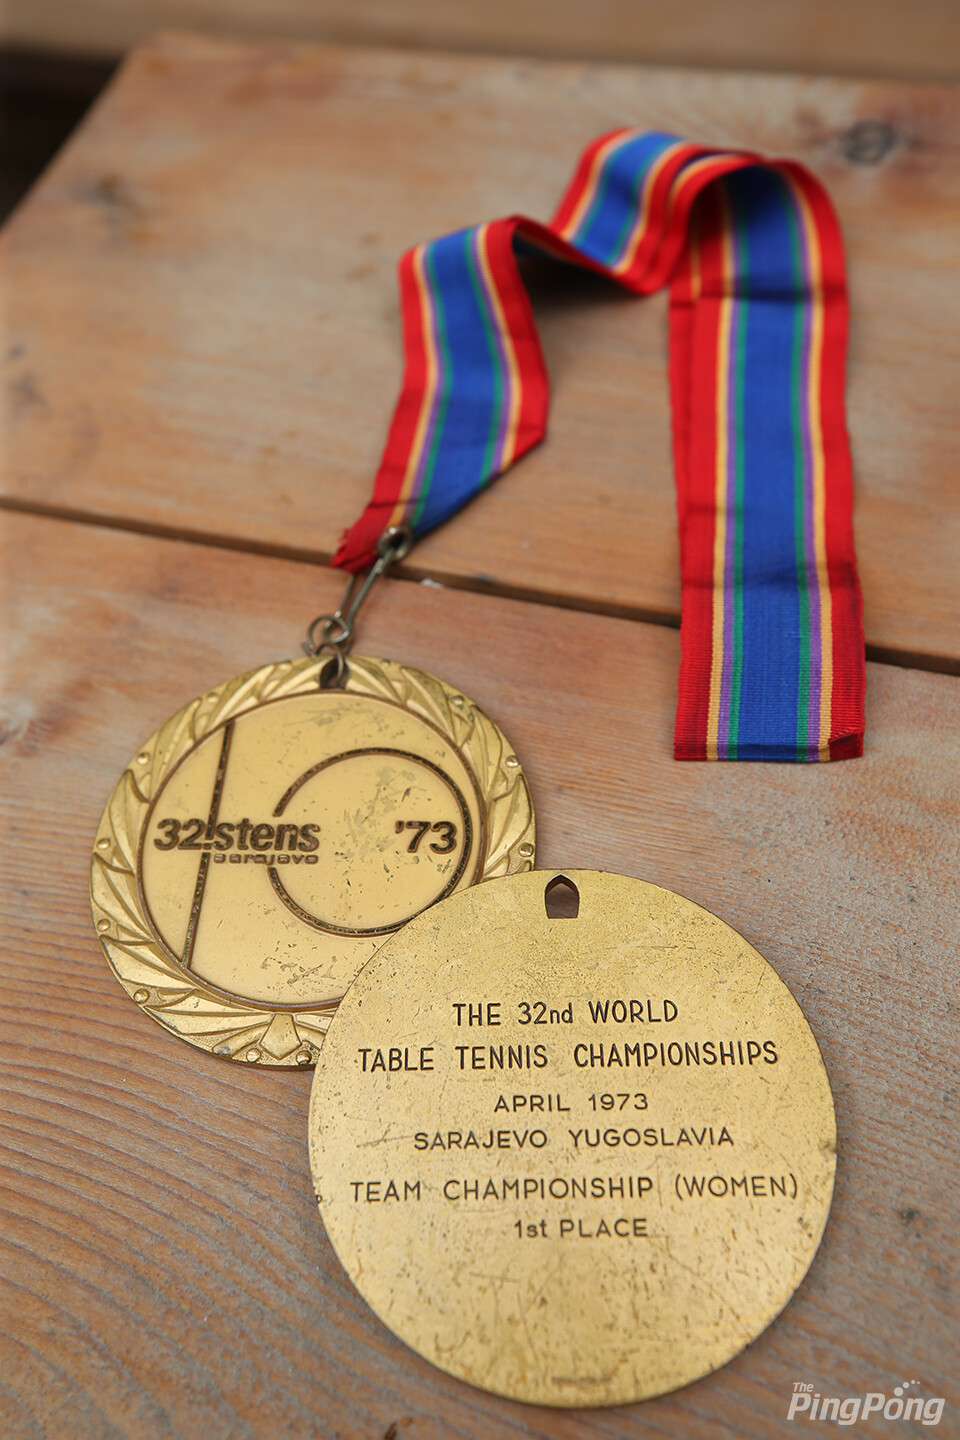 ▲ 한국탁구는 세계대회 금메달의 경험이 많지 않다. 사진은 무려 50년 전 사라예보대회 금메달이다. 이번 대회에서 다시 한 번!